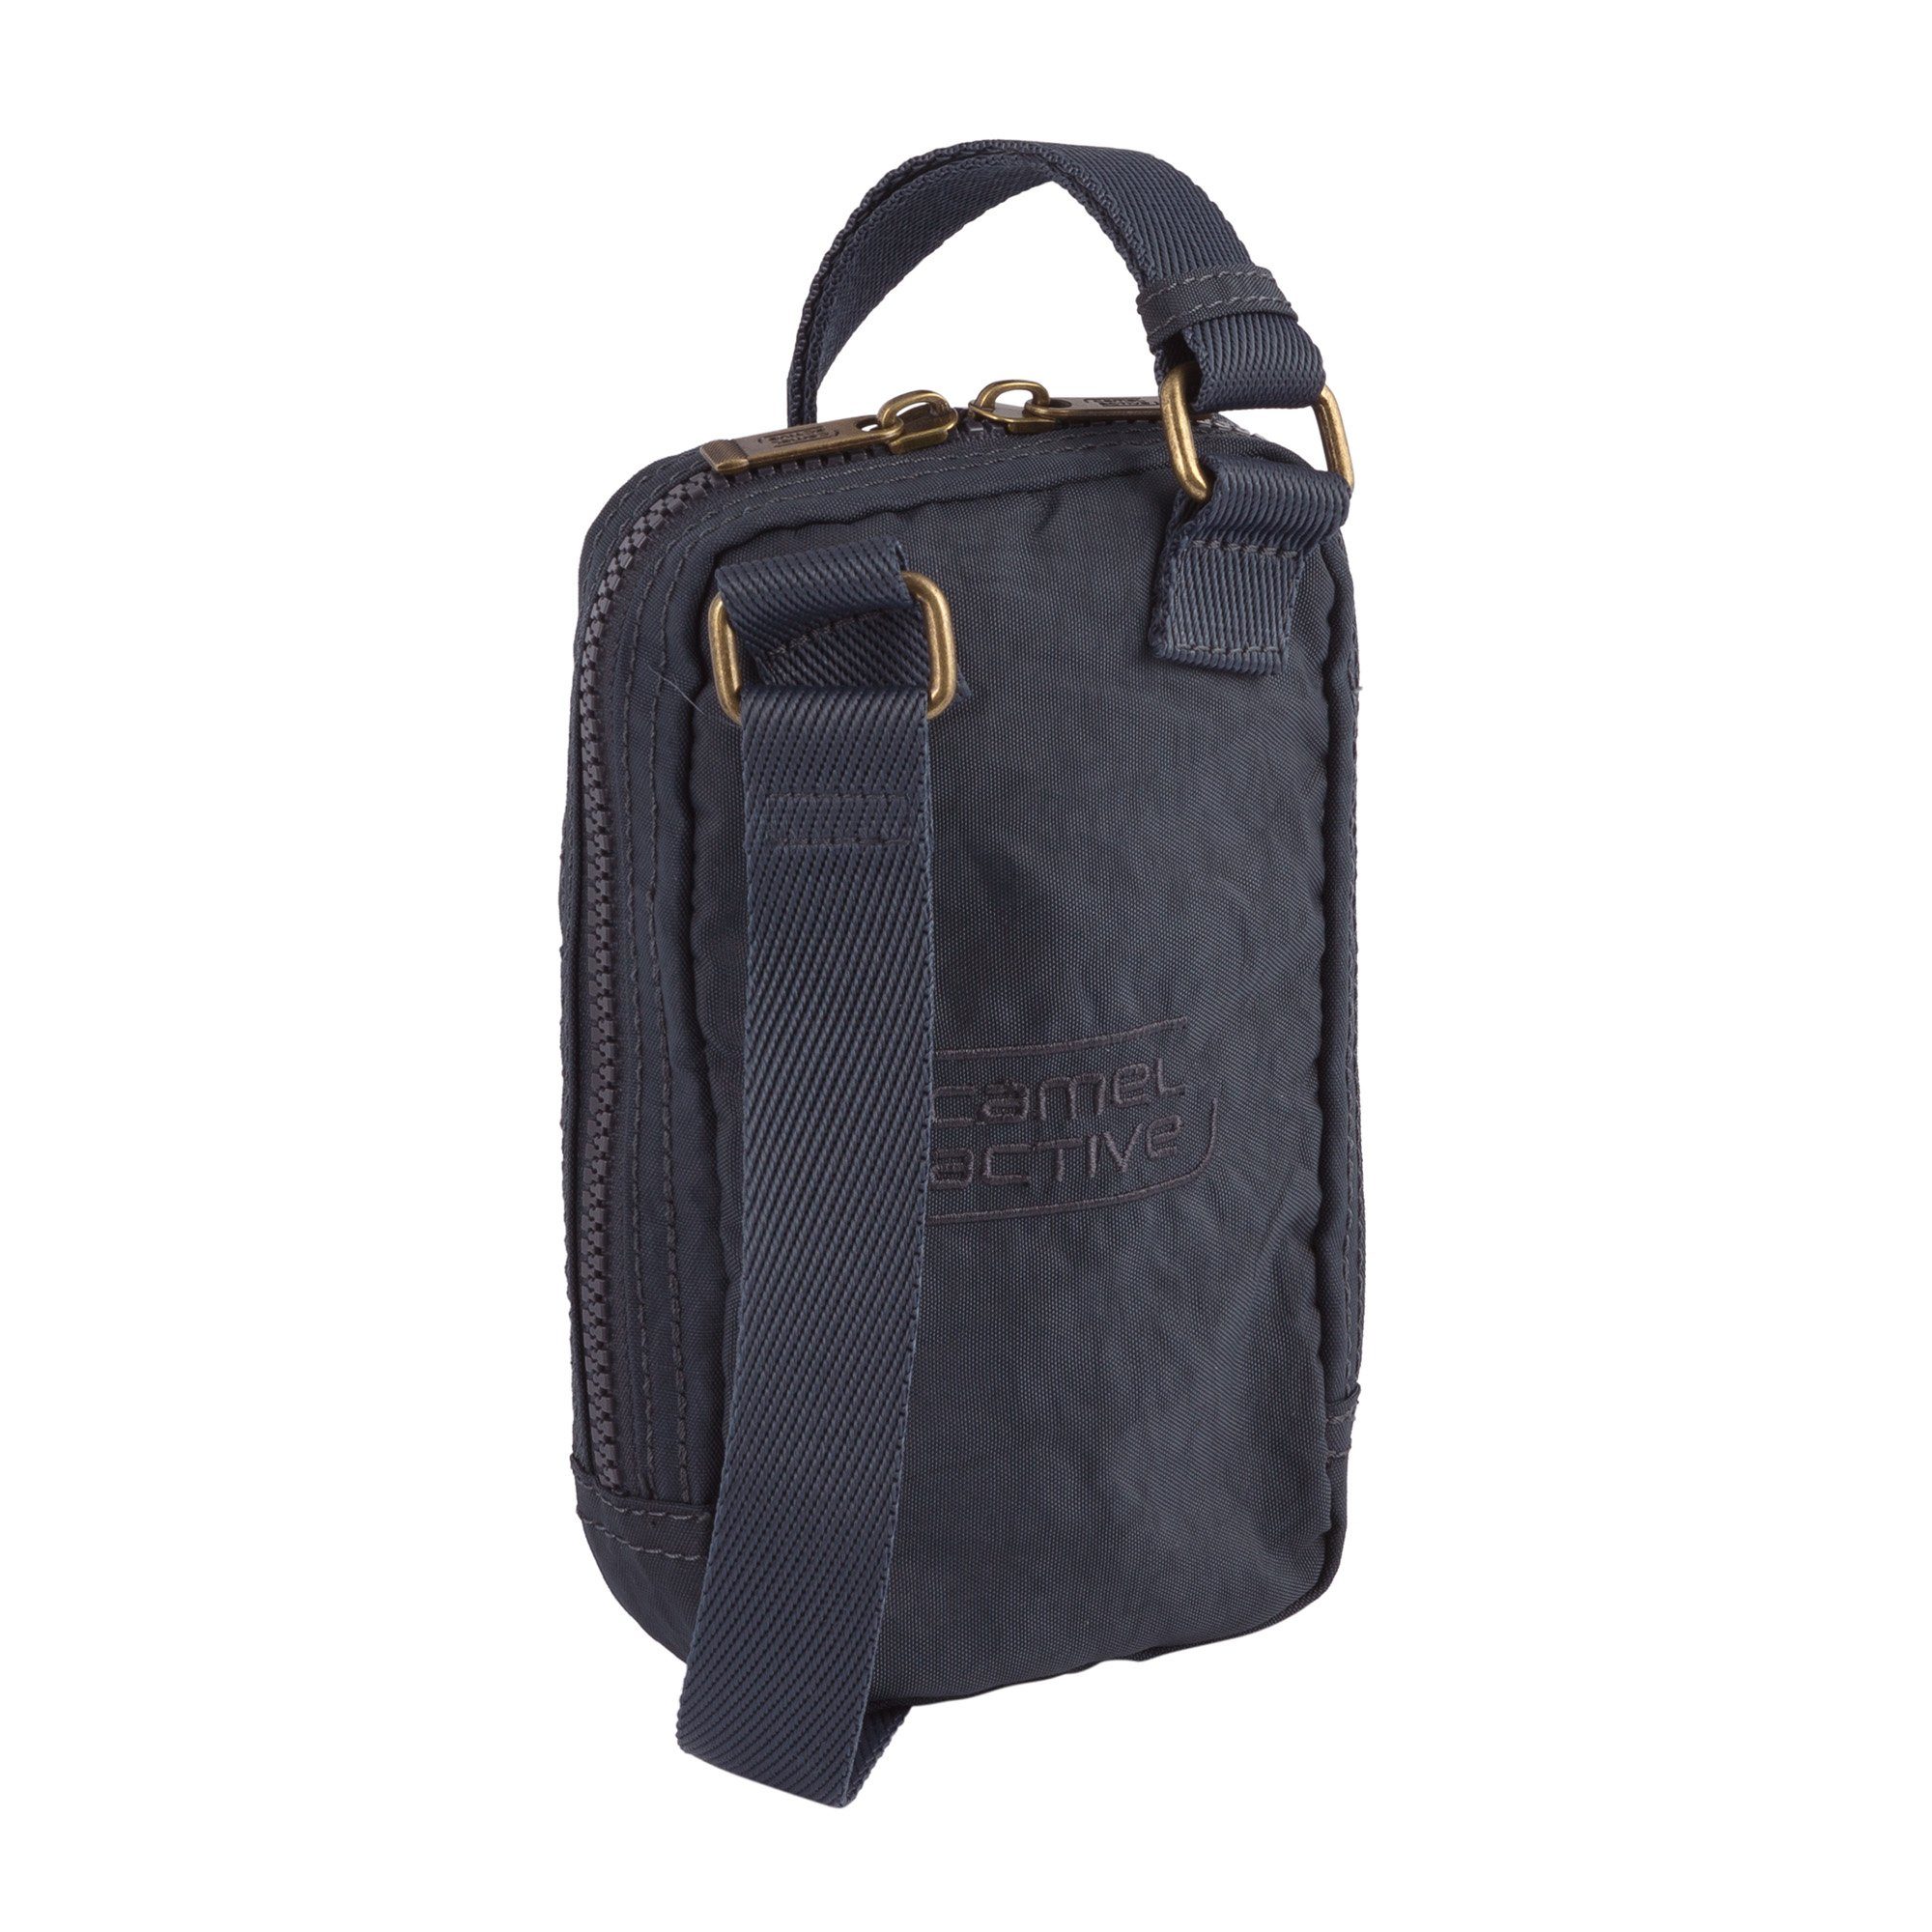 und active Handy Schlüssel dunkelblau camel für perfekt Journey, Bag Mini